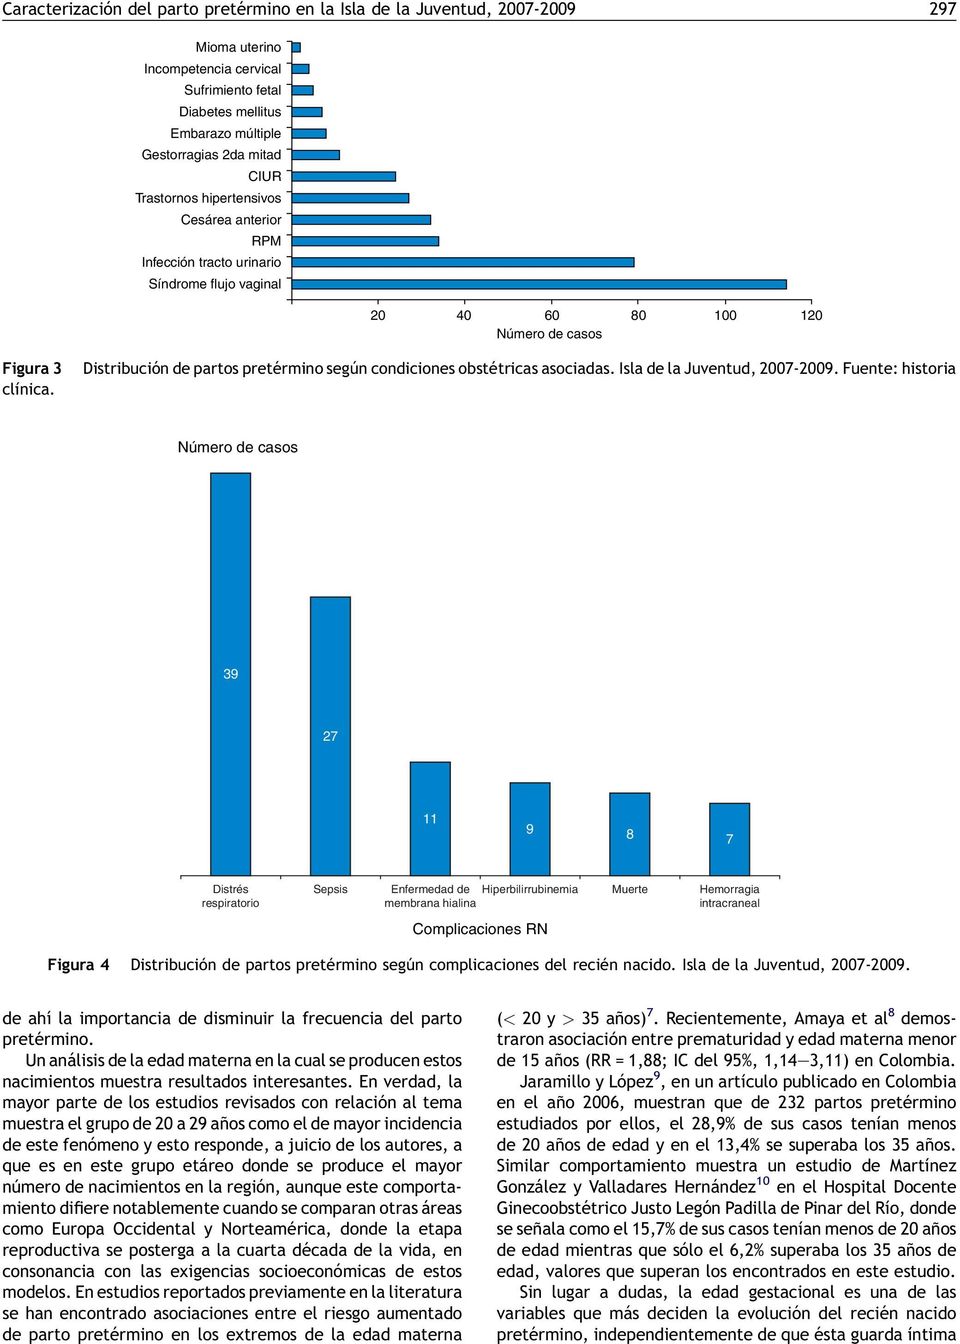 [()TD$FIG] Distribución de partos pretérmino según condiciones obstétricas asociadas. Isla de la Juventud, 2007-2009.